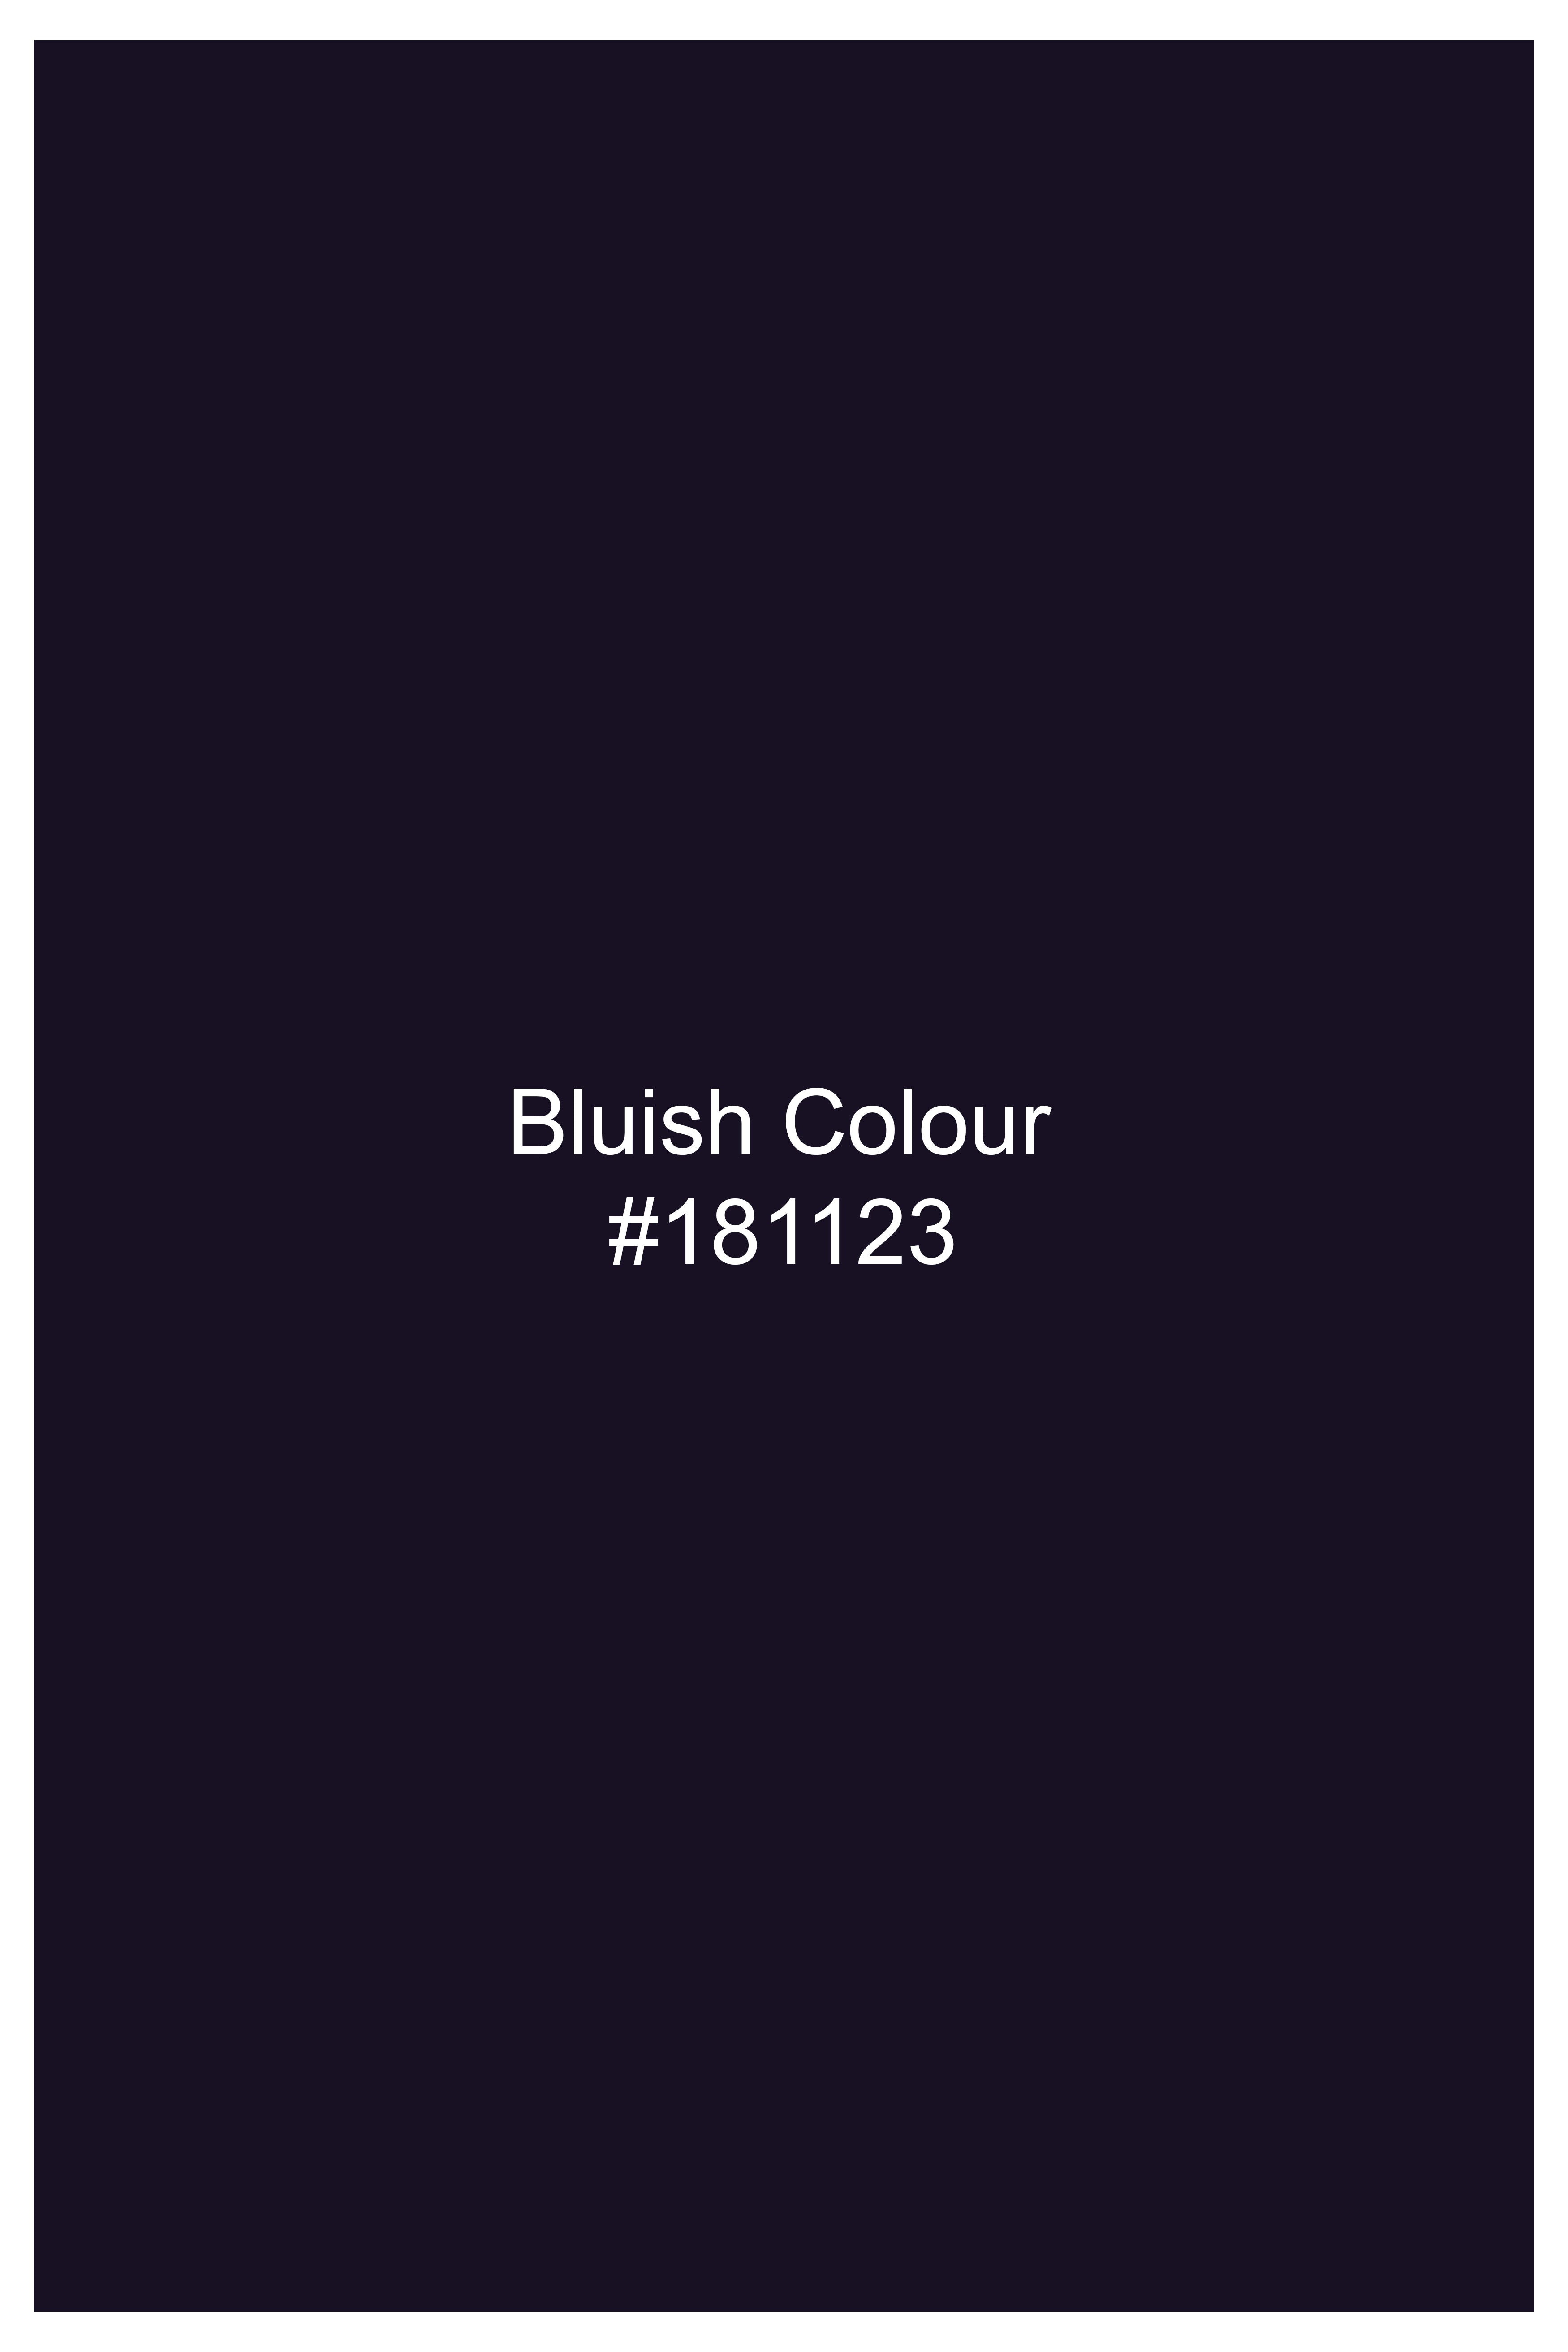 Bluish Wool Rich Single-breasted Blazer BL3029-SB-36, BL3029-SB-38, BL3029-SB-40, BL3029-SB-42, BL3029-SB-44, BL3029-SB-46, BL3029-SB-48, BL3029-SB-50, BL3029-SB-52, BL3029-SB-54, BL3029-SB-56, BL3029-SB-58, BL3029-SB-60